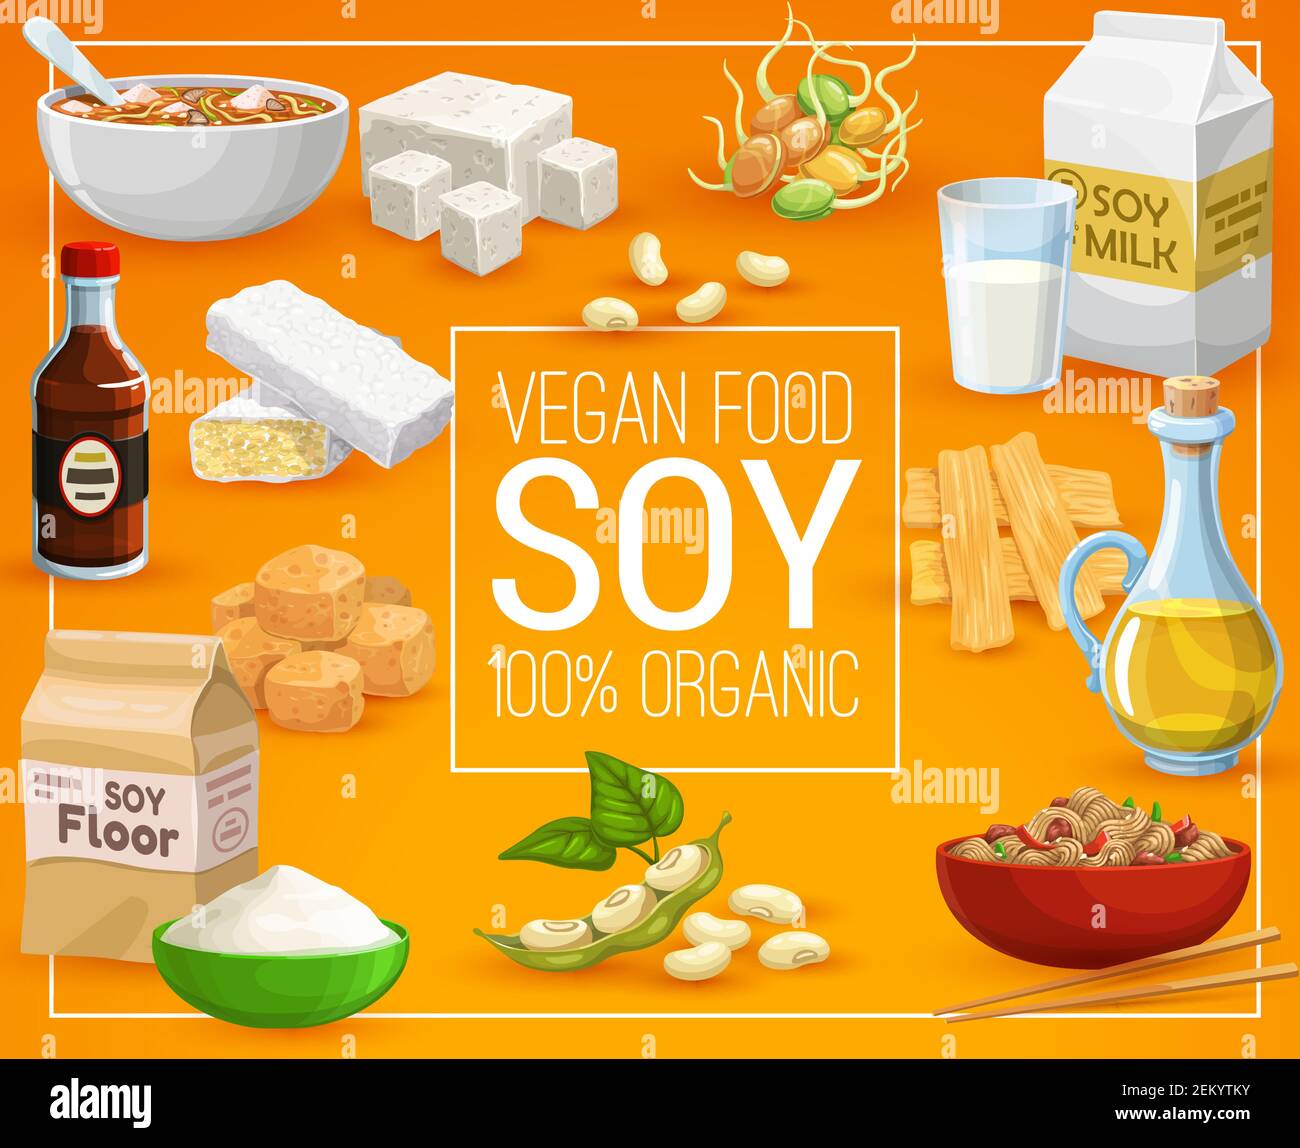 Productos Alimenticios De Soja Nutrición Saludable Y Alimentación Vegana Vector Orgánico 100 8195